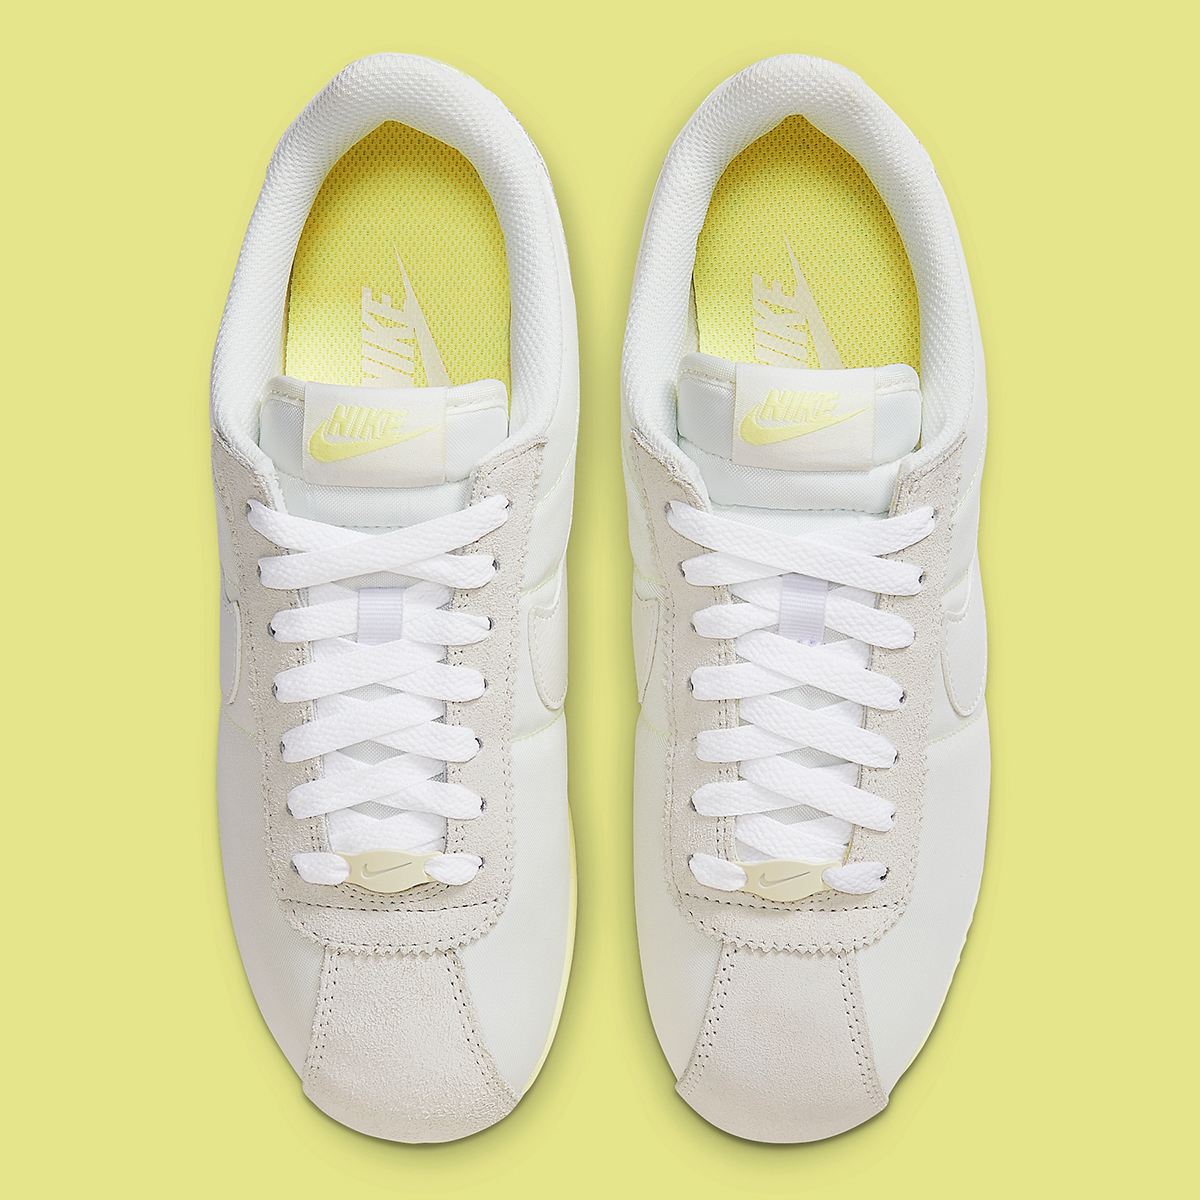 Nike clous Cortez White Pale Yellow Hf6410 118 7